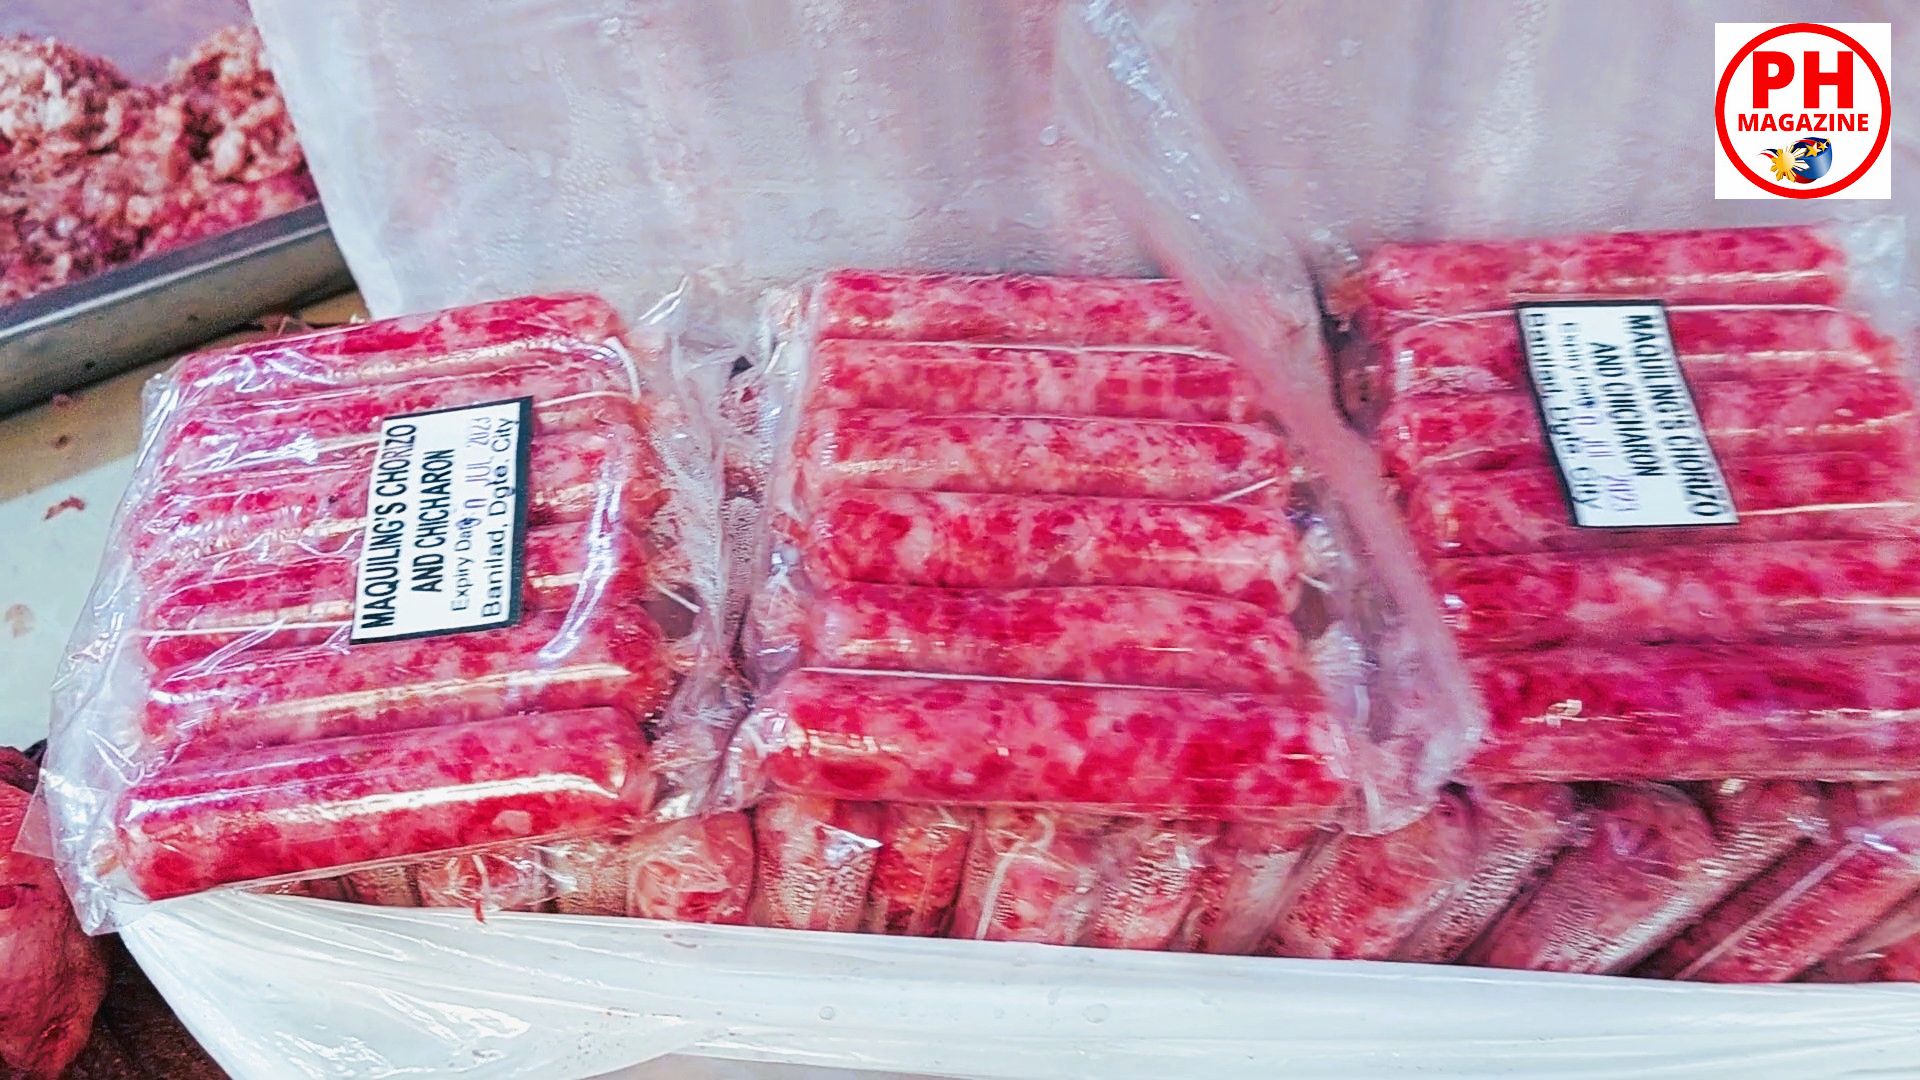 PHILIPPINEN BLOG - Fleischabteilung auf dem Markt